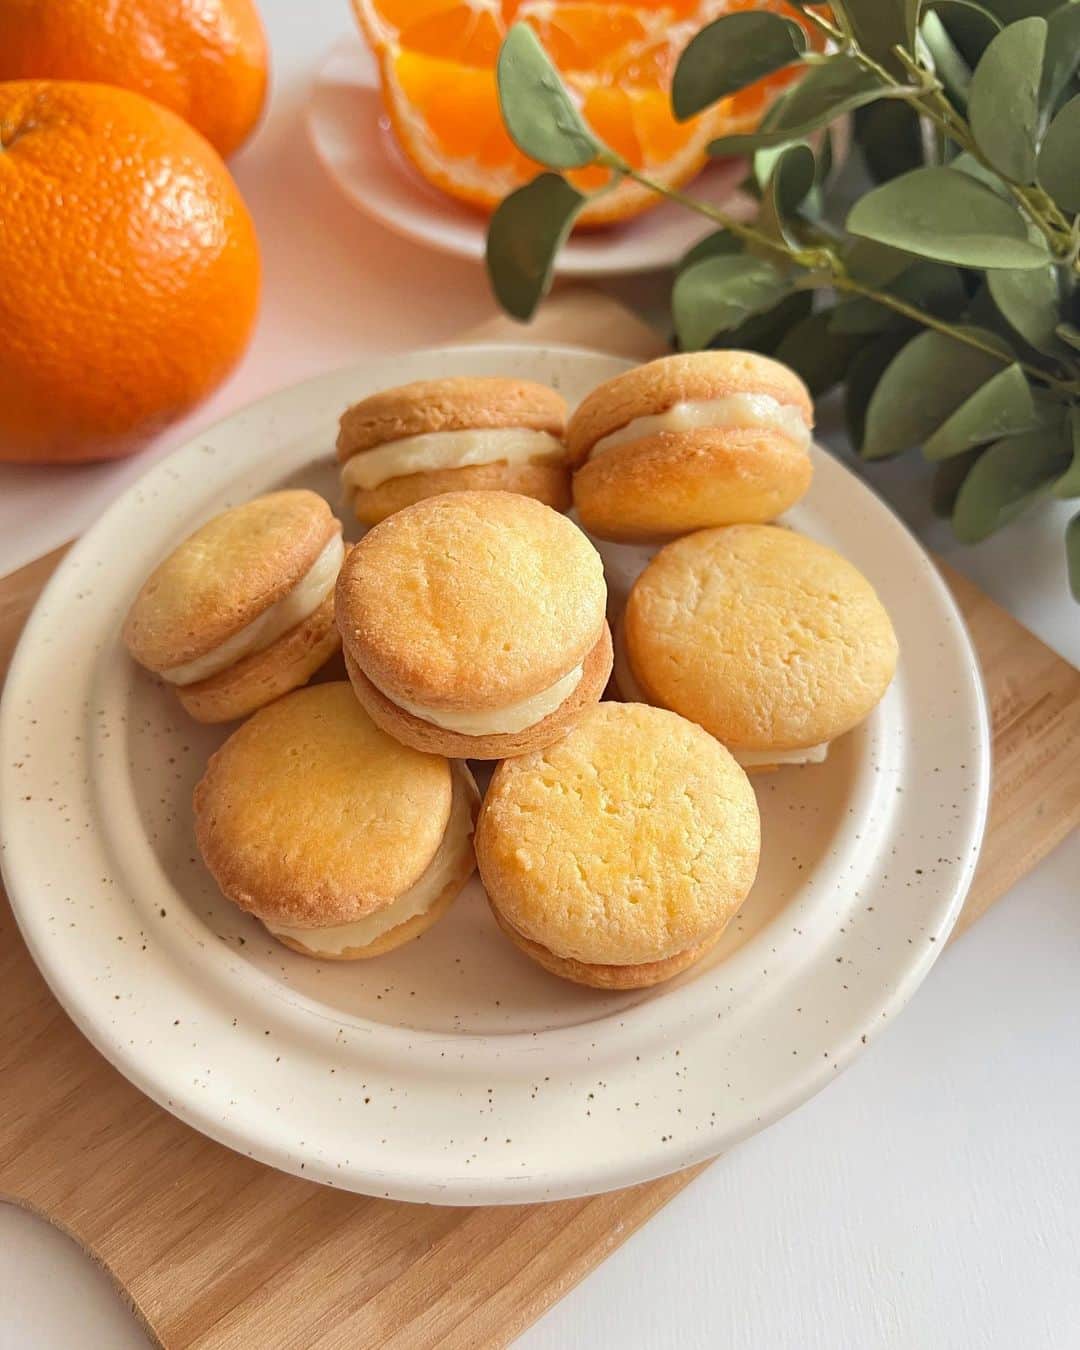 AYURA(アユーラ) のインスタグラム：「【肌にもうれしい❤オレンジクリーム：レシピあり】    今回は、美肌効果のあるビタミンCが豊富に含まれるオレンジで「オレンジクリーム」を作ってみました🍊   クッキーに挟んだり、ミニタルトにのせてケーキにするのも美味しそうですね♪   「保存」してぜひ作ってみてください✨   ■材料(4人分) ・オレンジ果汁：120ml (果汁100%オレンジジュースでもOK！) ☆卵黄：3個 ☆全卵：1個 ・グラニュー糖：70g ・無塩バター：70g ・粉ゼラチン：2g ・水：10ml   ■作り方 1.水に粉ゼラチンを入れてふやかしておきます。   2.鍋でオレンジ果汁を沸騰するまで温めます。   3.ボウルに『☆』とグラニュー糖を入れて、白くなるまでかき混ぜたら温めたオレンジ果汁を加えます。 ※ココで軽く混ぜてね。   4.再び鍋に戻し、弱火でゆっくり加熱しながらクリーム状になるまで耐熱のゴムベラで混ぜます。   5.耐熱ボウルに移し、熱いうちに無塩バター・ふやかしたゼラチンを加えてホイッパーで乳化させます   6.ラップをして氷水で冷やしたら完成♪   #アユーラ #AYURA #アユーラのある生活 #おうちカフェ #おうちカフェごっこ #おうちカフェ部 #おうち時間を楽しむ #ホームカフェ #homecafe #おやつ #おやつタイム #おやつの時間 #オレンジ🍊 #3時のおやつ #今日のおやつ #スイーツ作り #バタークッキー #プチギフト #簡単レシピ #レシピあり #簡単おやつ #美肌レシピ #cookie #フーディーテーブル #手作りスイーツ #🍊」